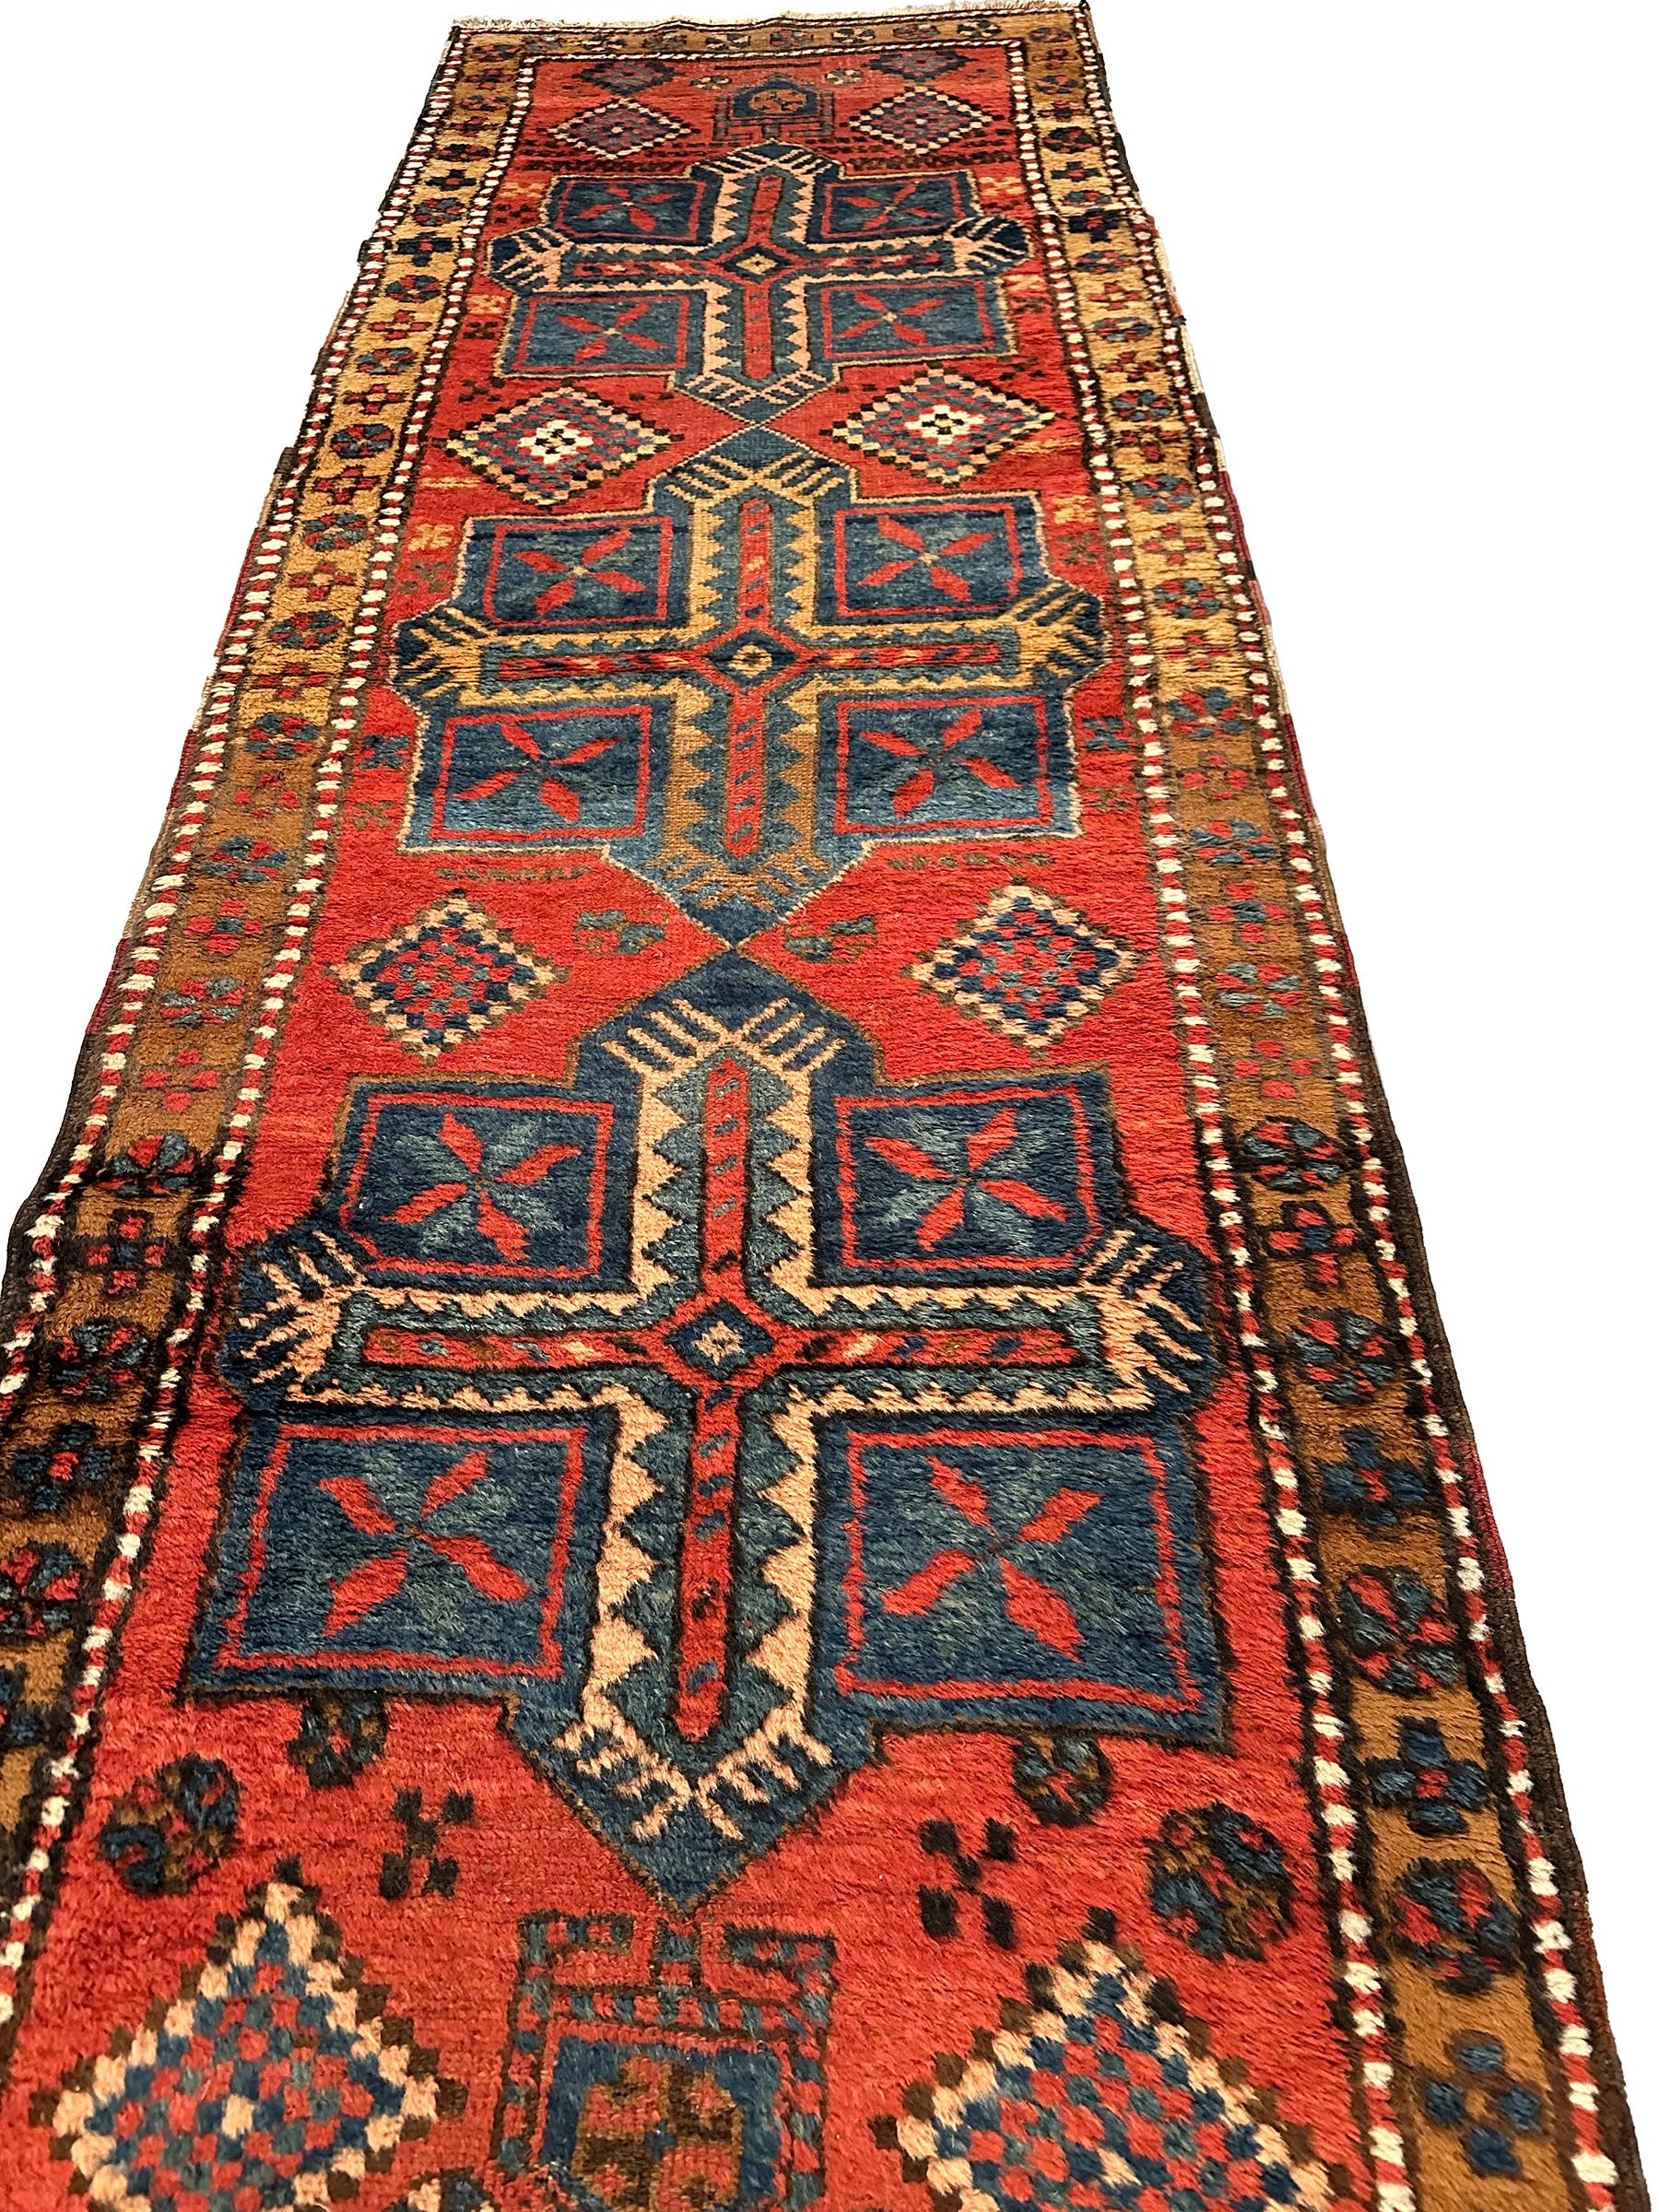 Persian Antique Geometric Tribal Rug Handmade Runner Rug 1900 89cm x 262cm 3x9ft For Sale